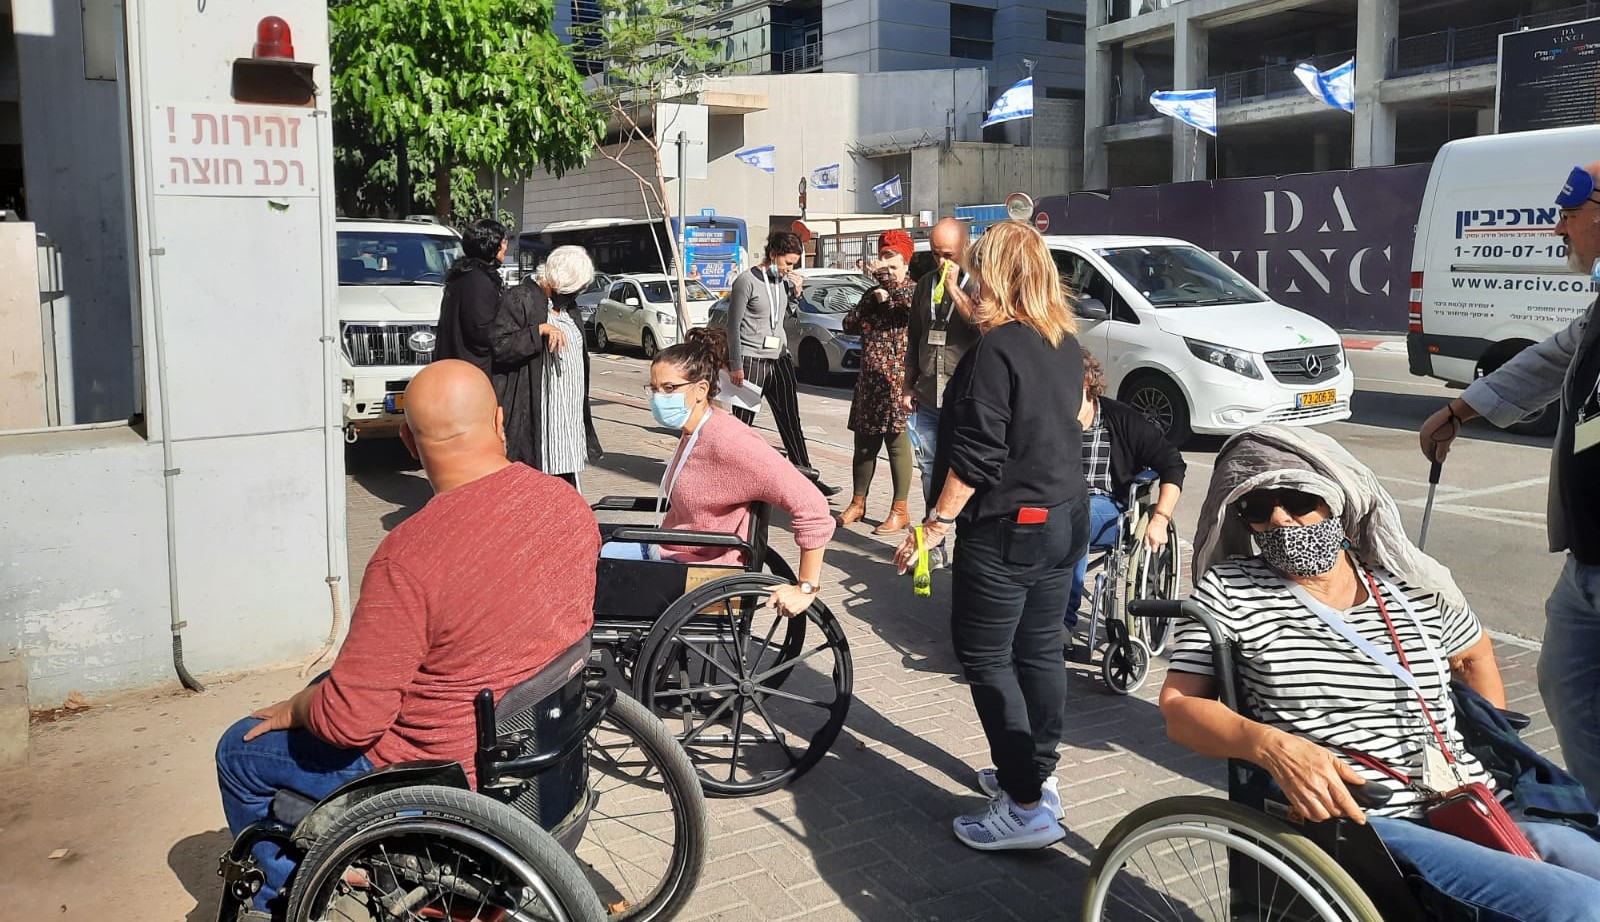 משתתפות ומשתתפי הקורס מתנסים בהתניידות בכיסא גלגלים וללא יכולת לראות בסמוך לבית התנועה